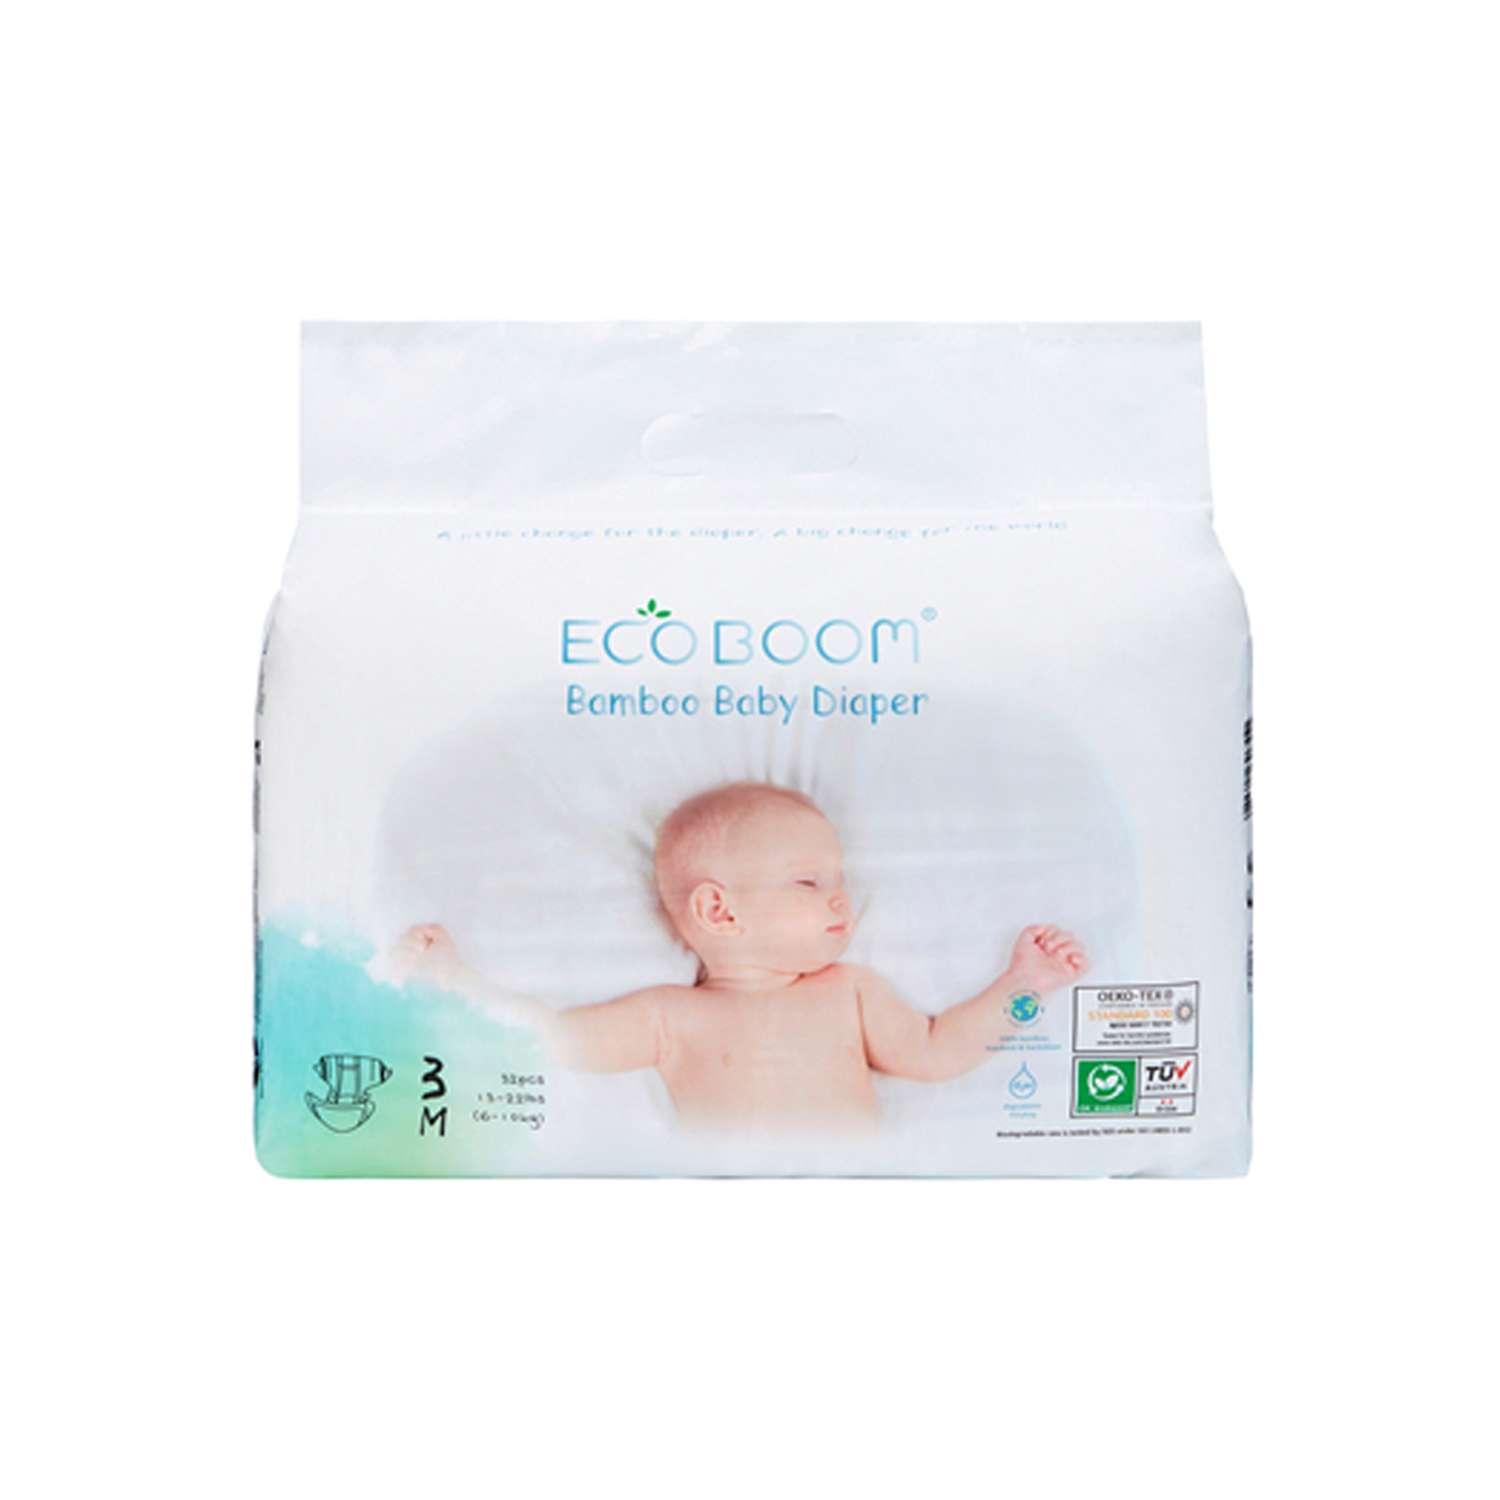 Бамбуковые подгузники детские ECO BOOM размер 3/M для детей весом 6-10 кг 32 шт - фото 1